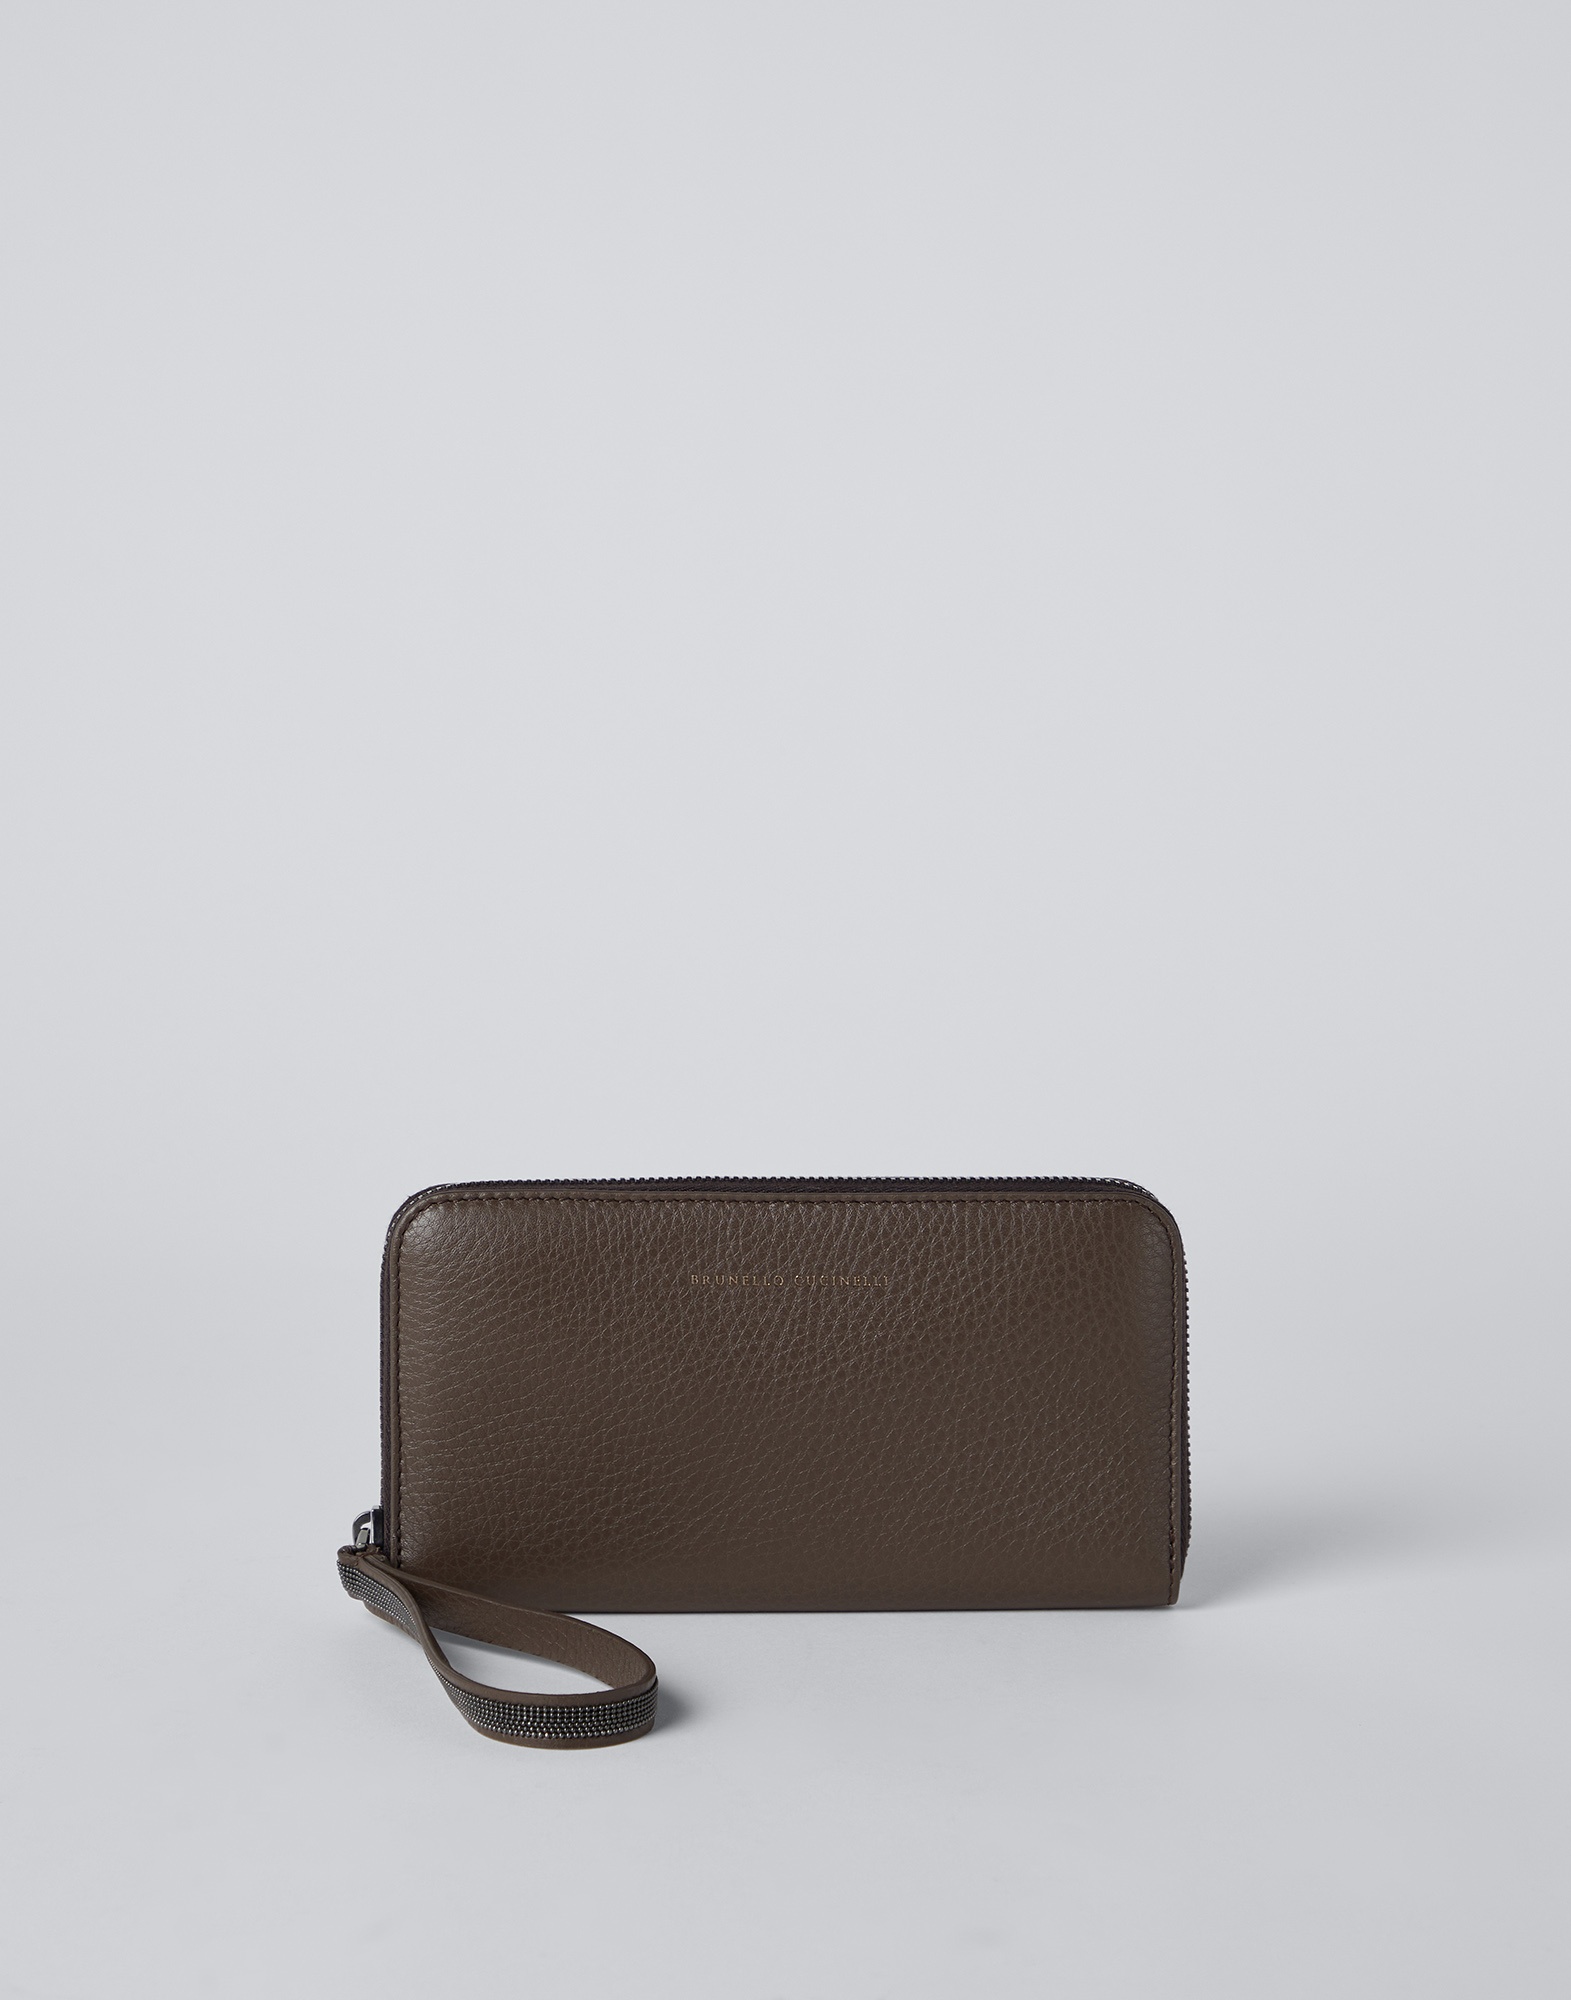 Texture calfskin wallet with precious zipper pull - 1